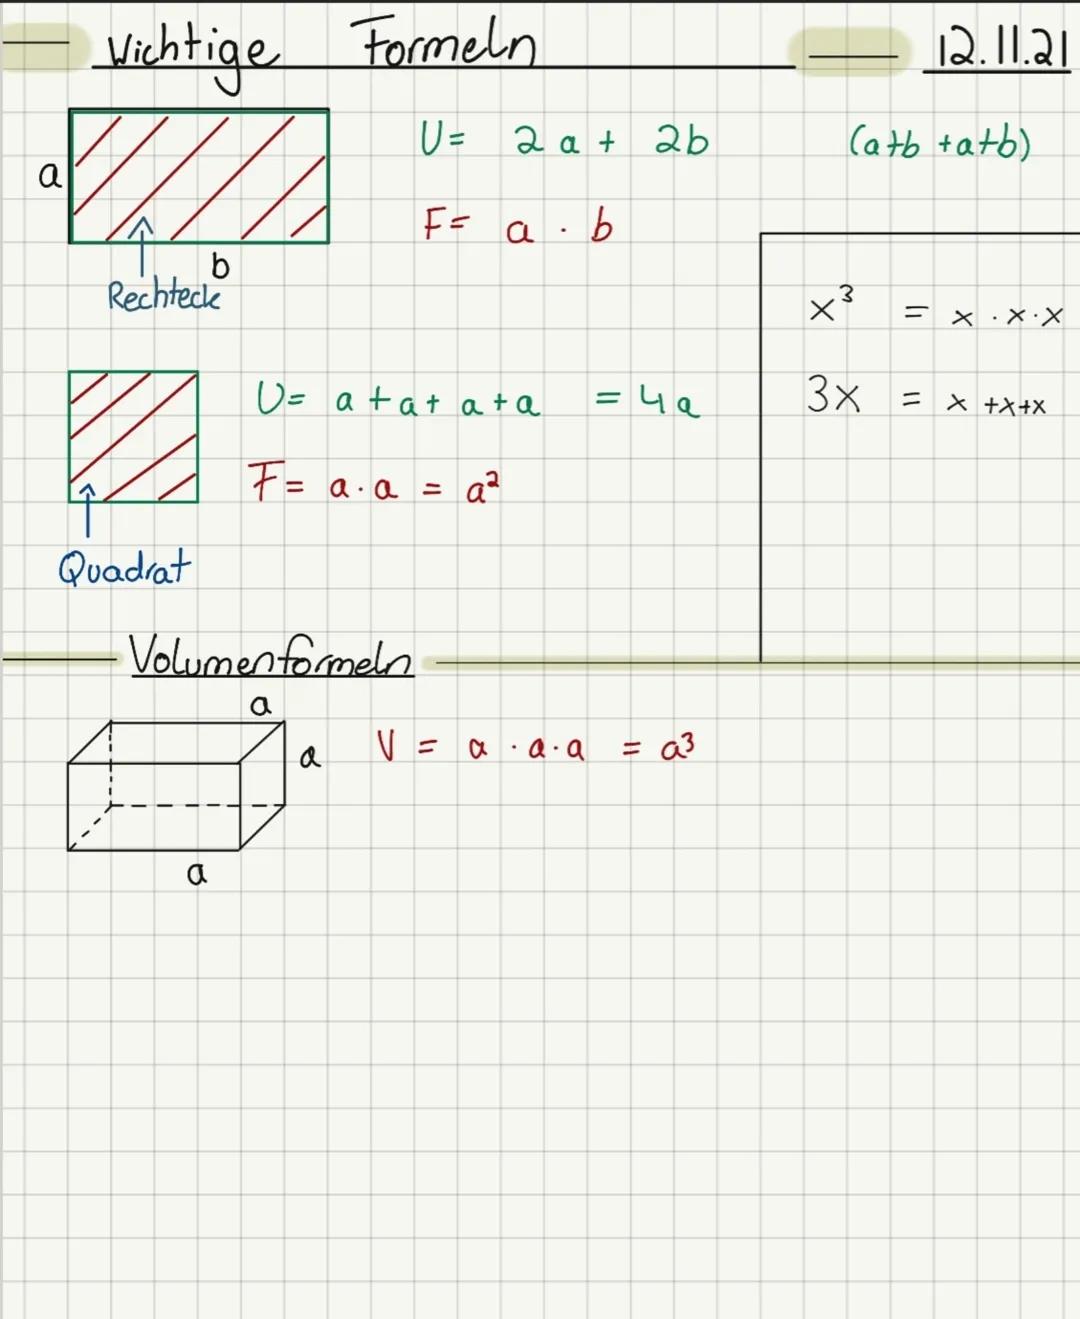 Zuordnungen
1 Größe Ausgangswert -> 2. Größe Zugeordneter Wert
X ->
Wertetabelle:
yof
6
J
X
Wertepaare: (1:2) (2;4) (3;6) (4,8)
Graphen
2
1
